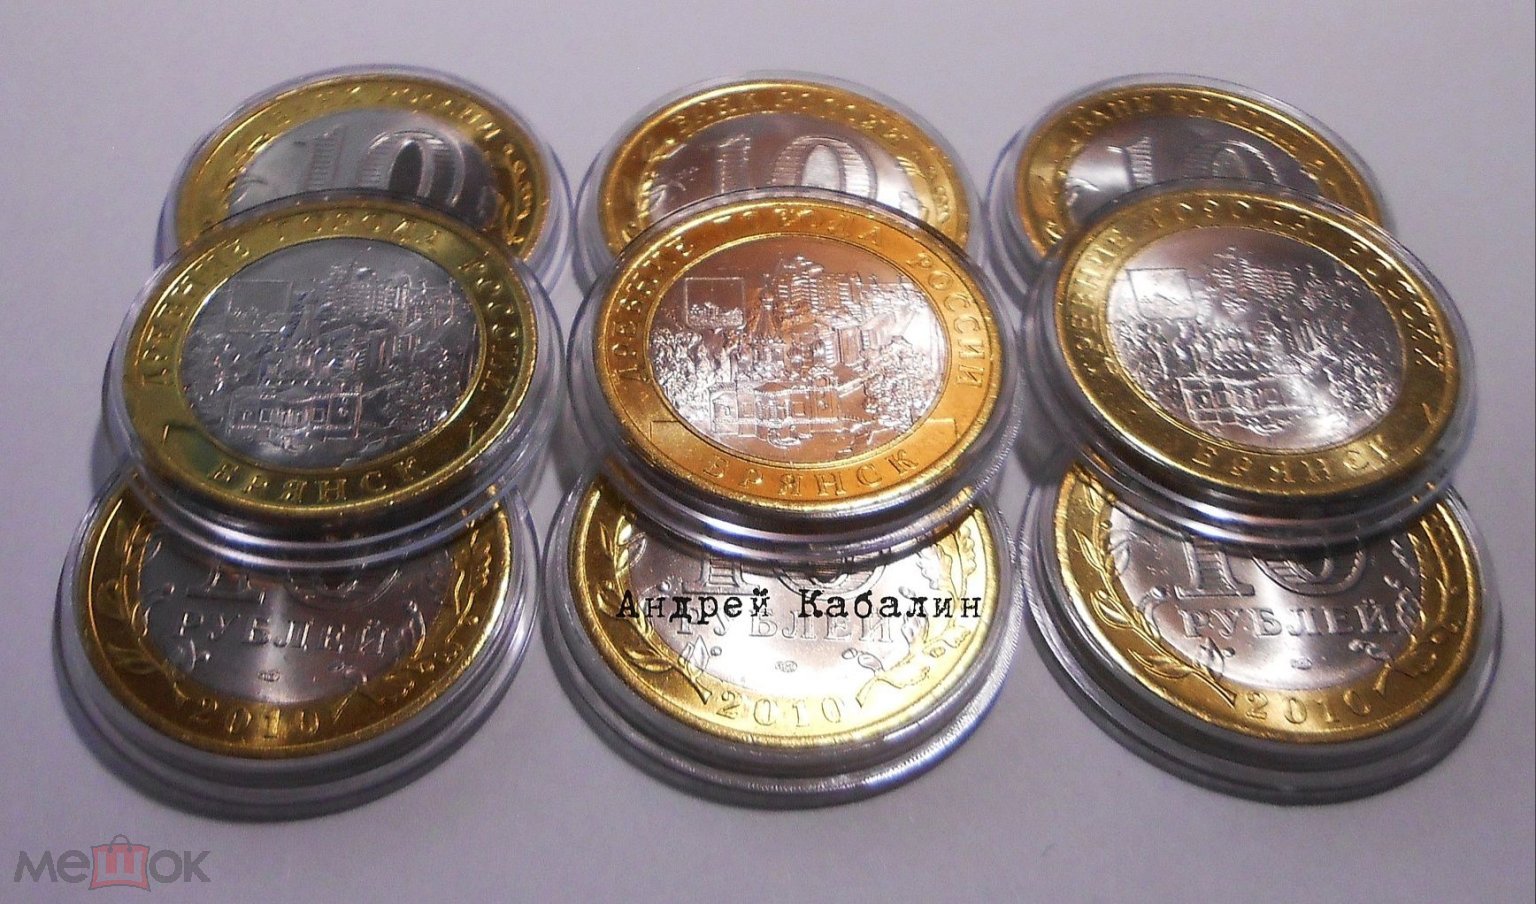 Россия 10 рублей 2010 год СПМД Брянск  UNC (мешковая в капсуле )  не мытая